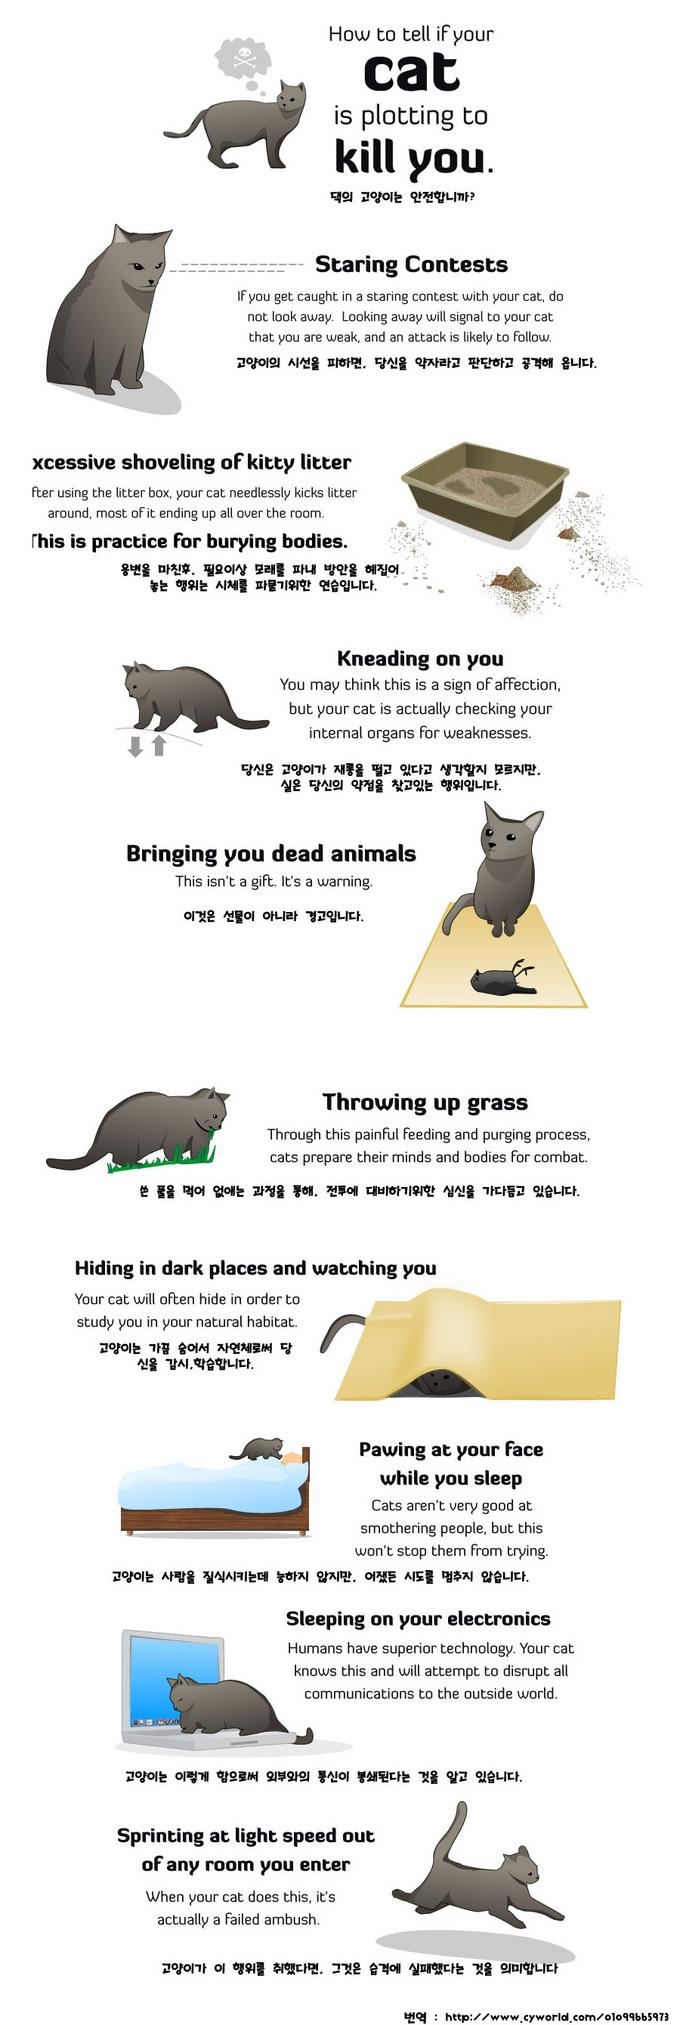 고양이가 당신을 죽이려하는 증거.jpg